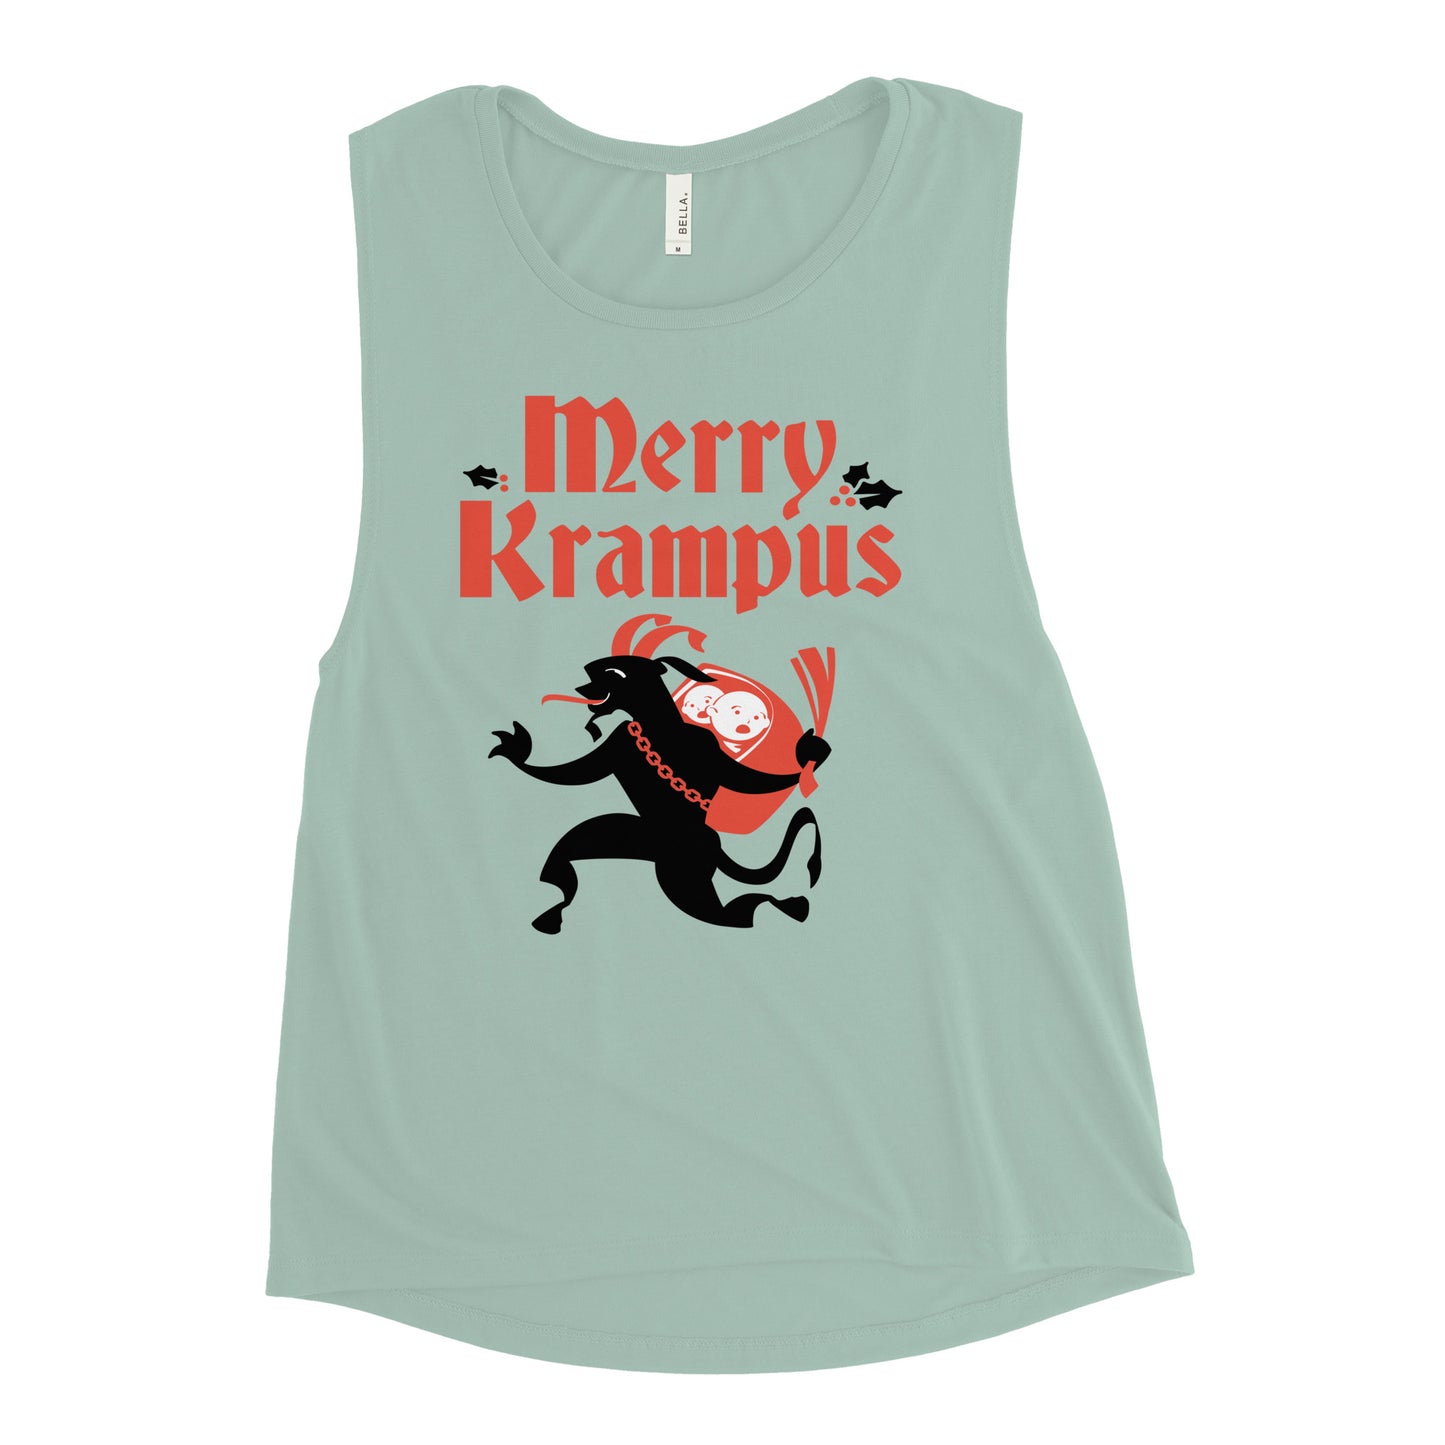 Merry Krampus Women's Muscle Tank